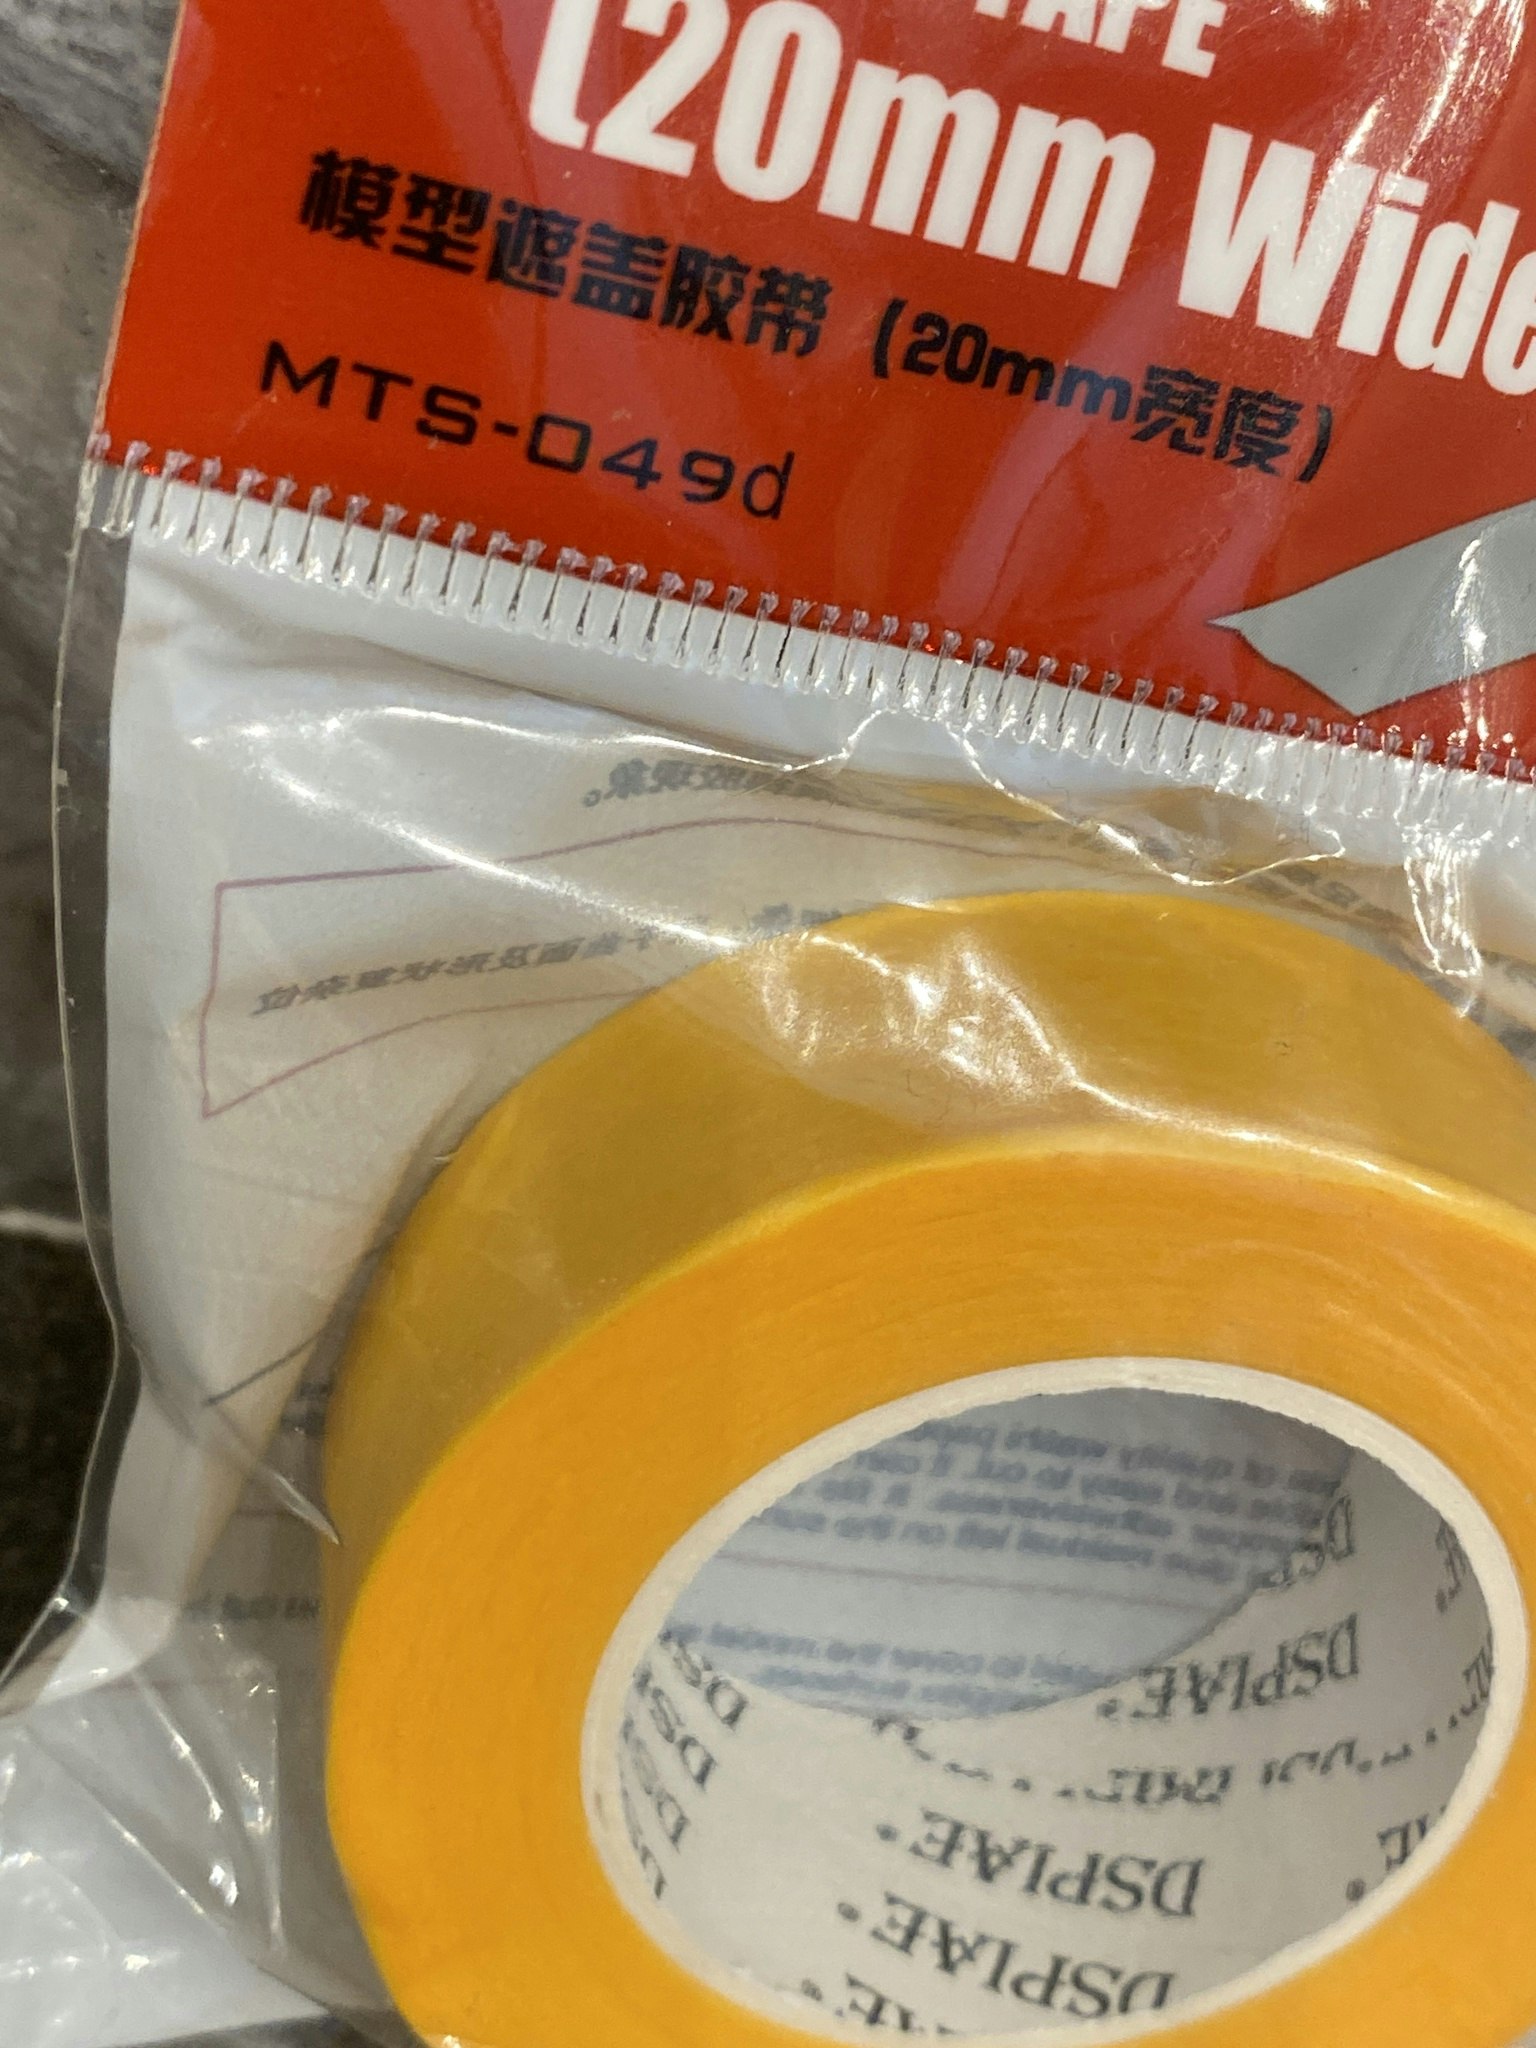 Maskerings-tejp/Masking-tape 1st/pcs - 20 mm fr Meng